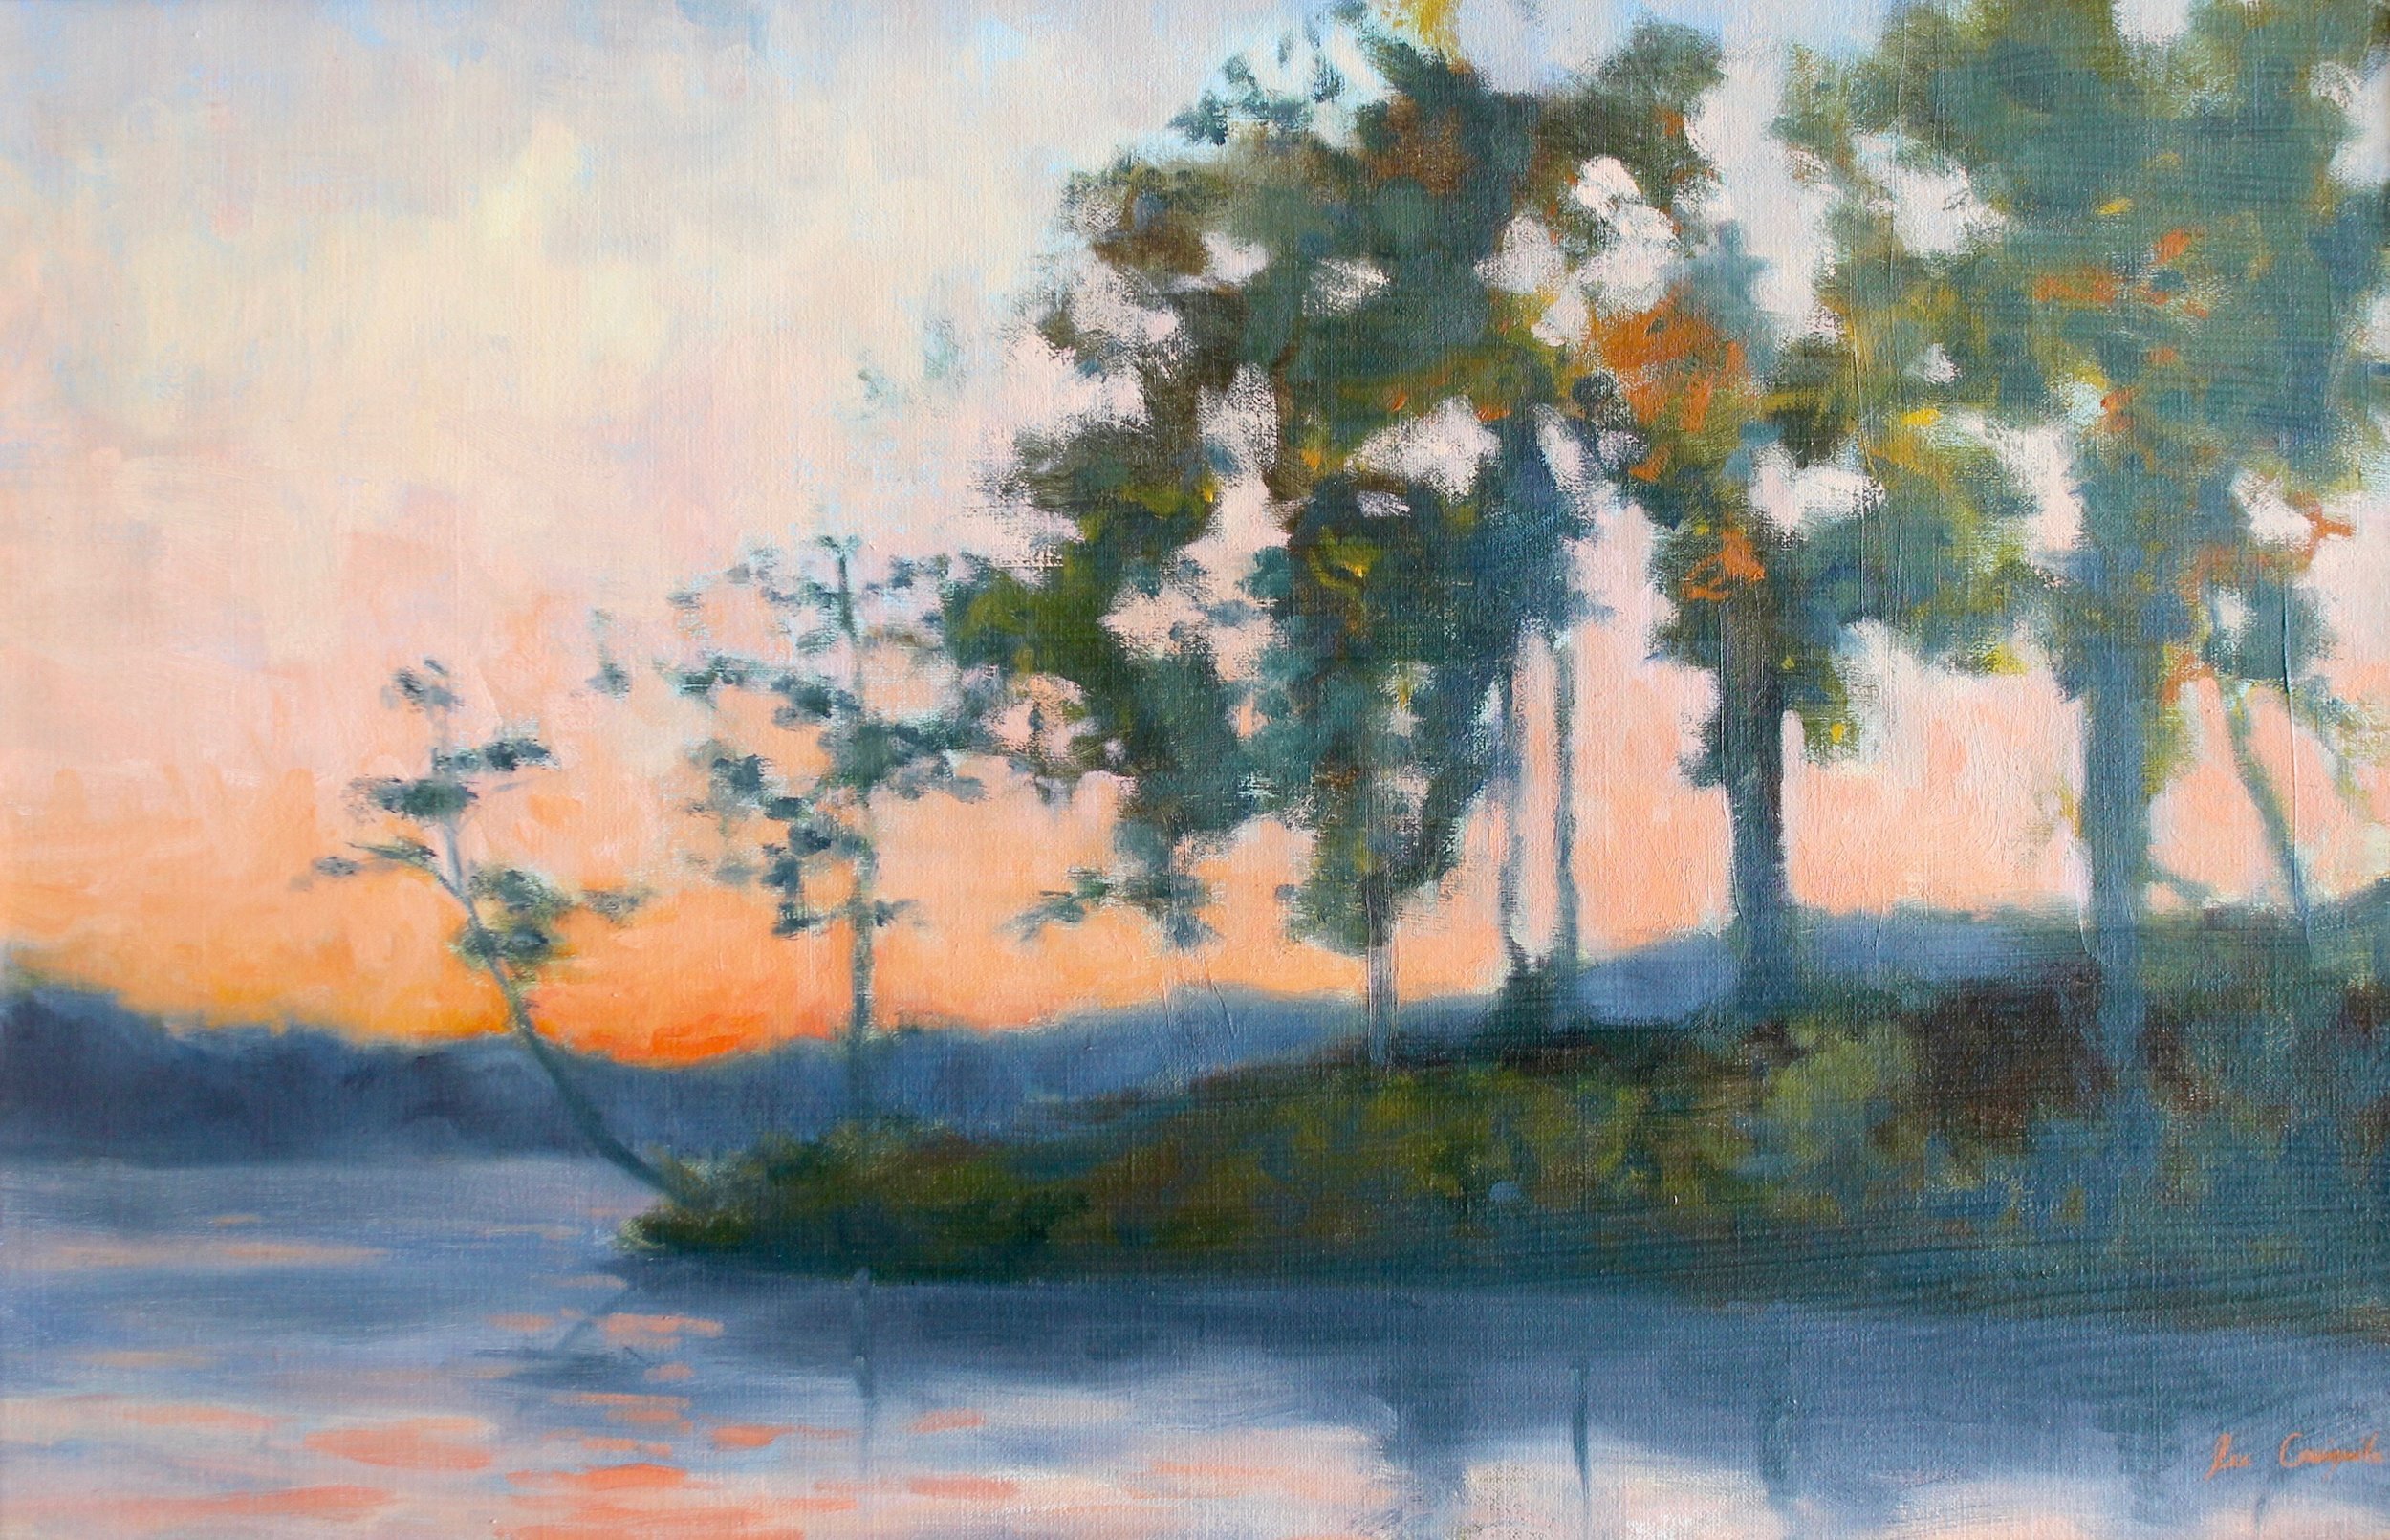 SUNSET ON LAKE KEOWEE